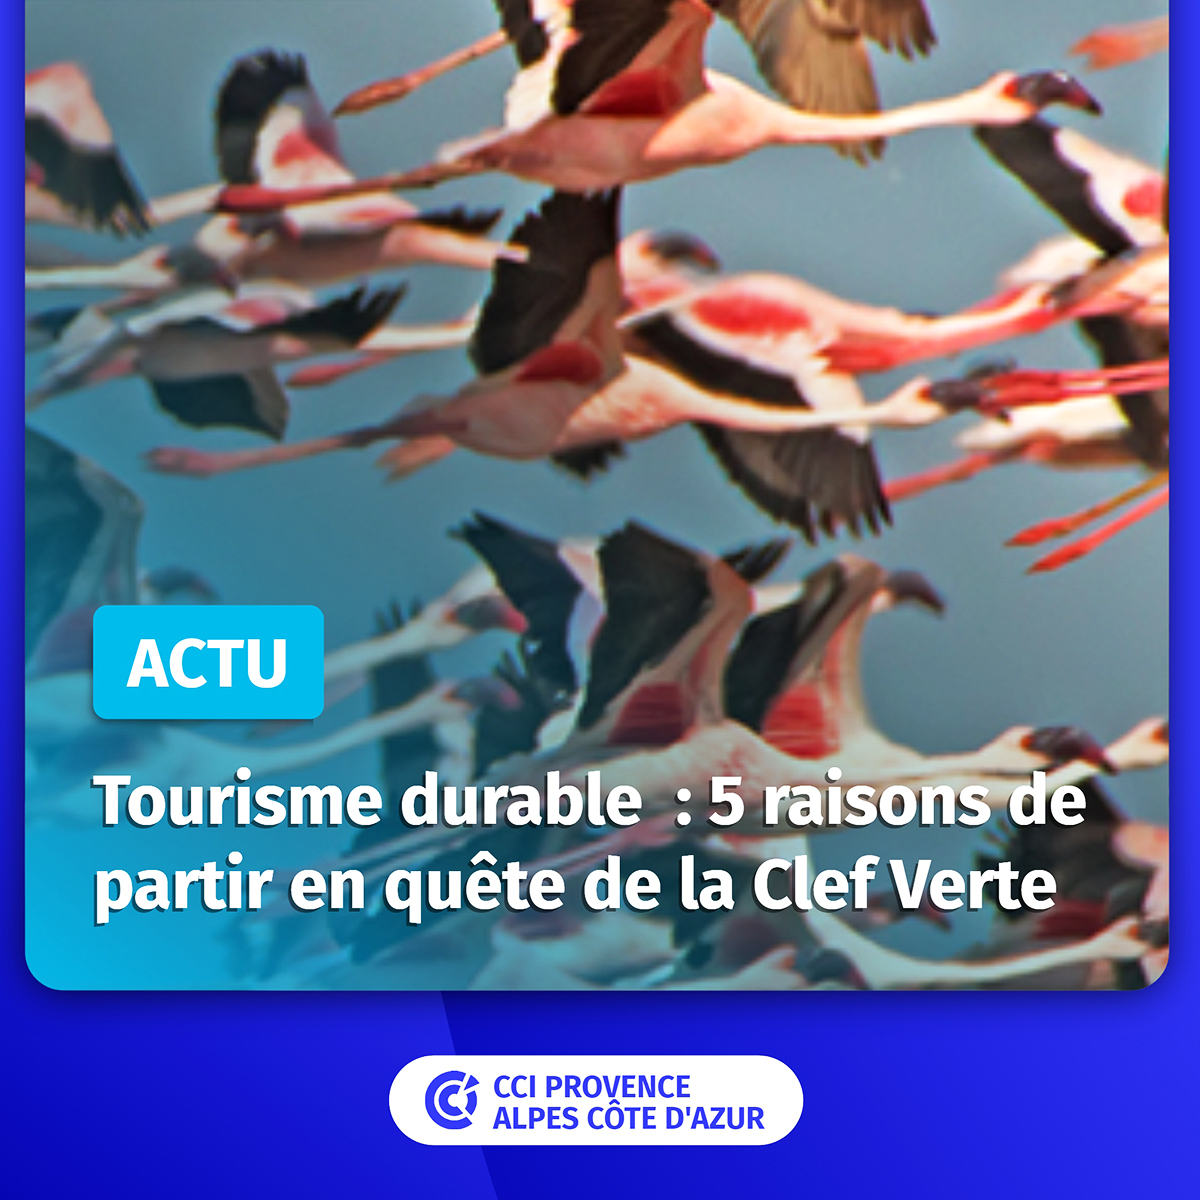 [dernière ligne droite⌛️] 
Acteurs du #tourismedurable en #régionSud, il vous reste une dizaine de jours pour déposer votre candidature #ClefVerte et rejoindre les 240 hébergeurs et restaurateurs labellisés, audités par notre #réseauCCI ✅ 
Lire ici⤵️ paca.cci.fr/actualite/tour…